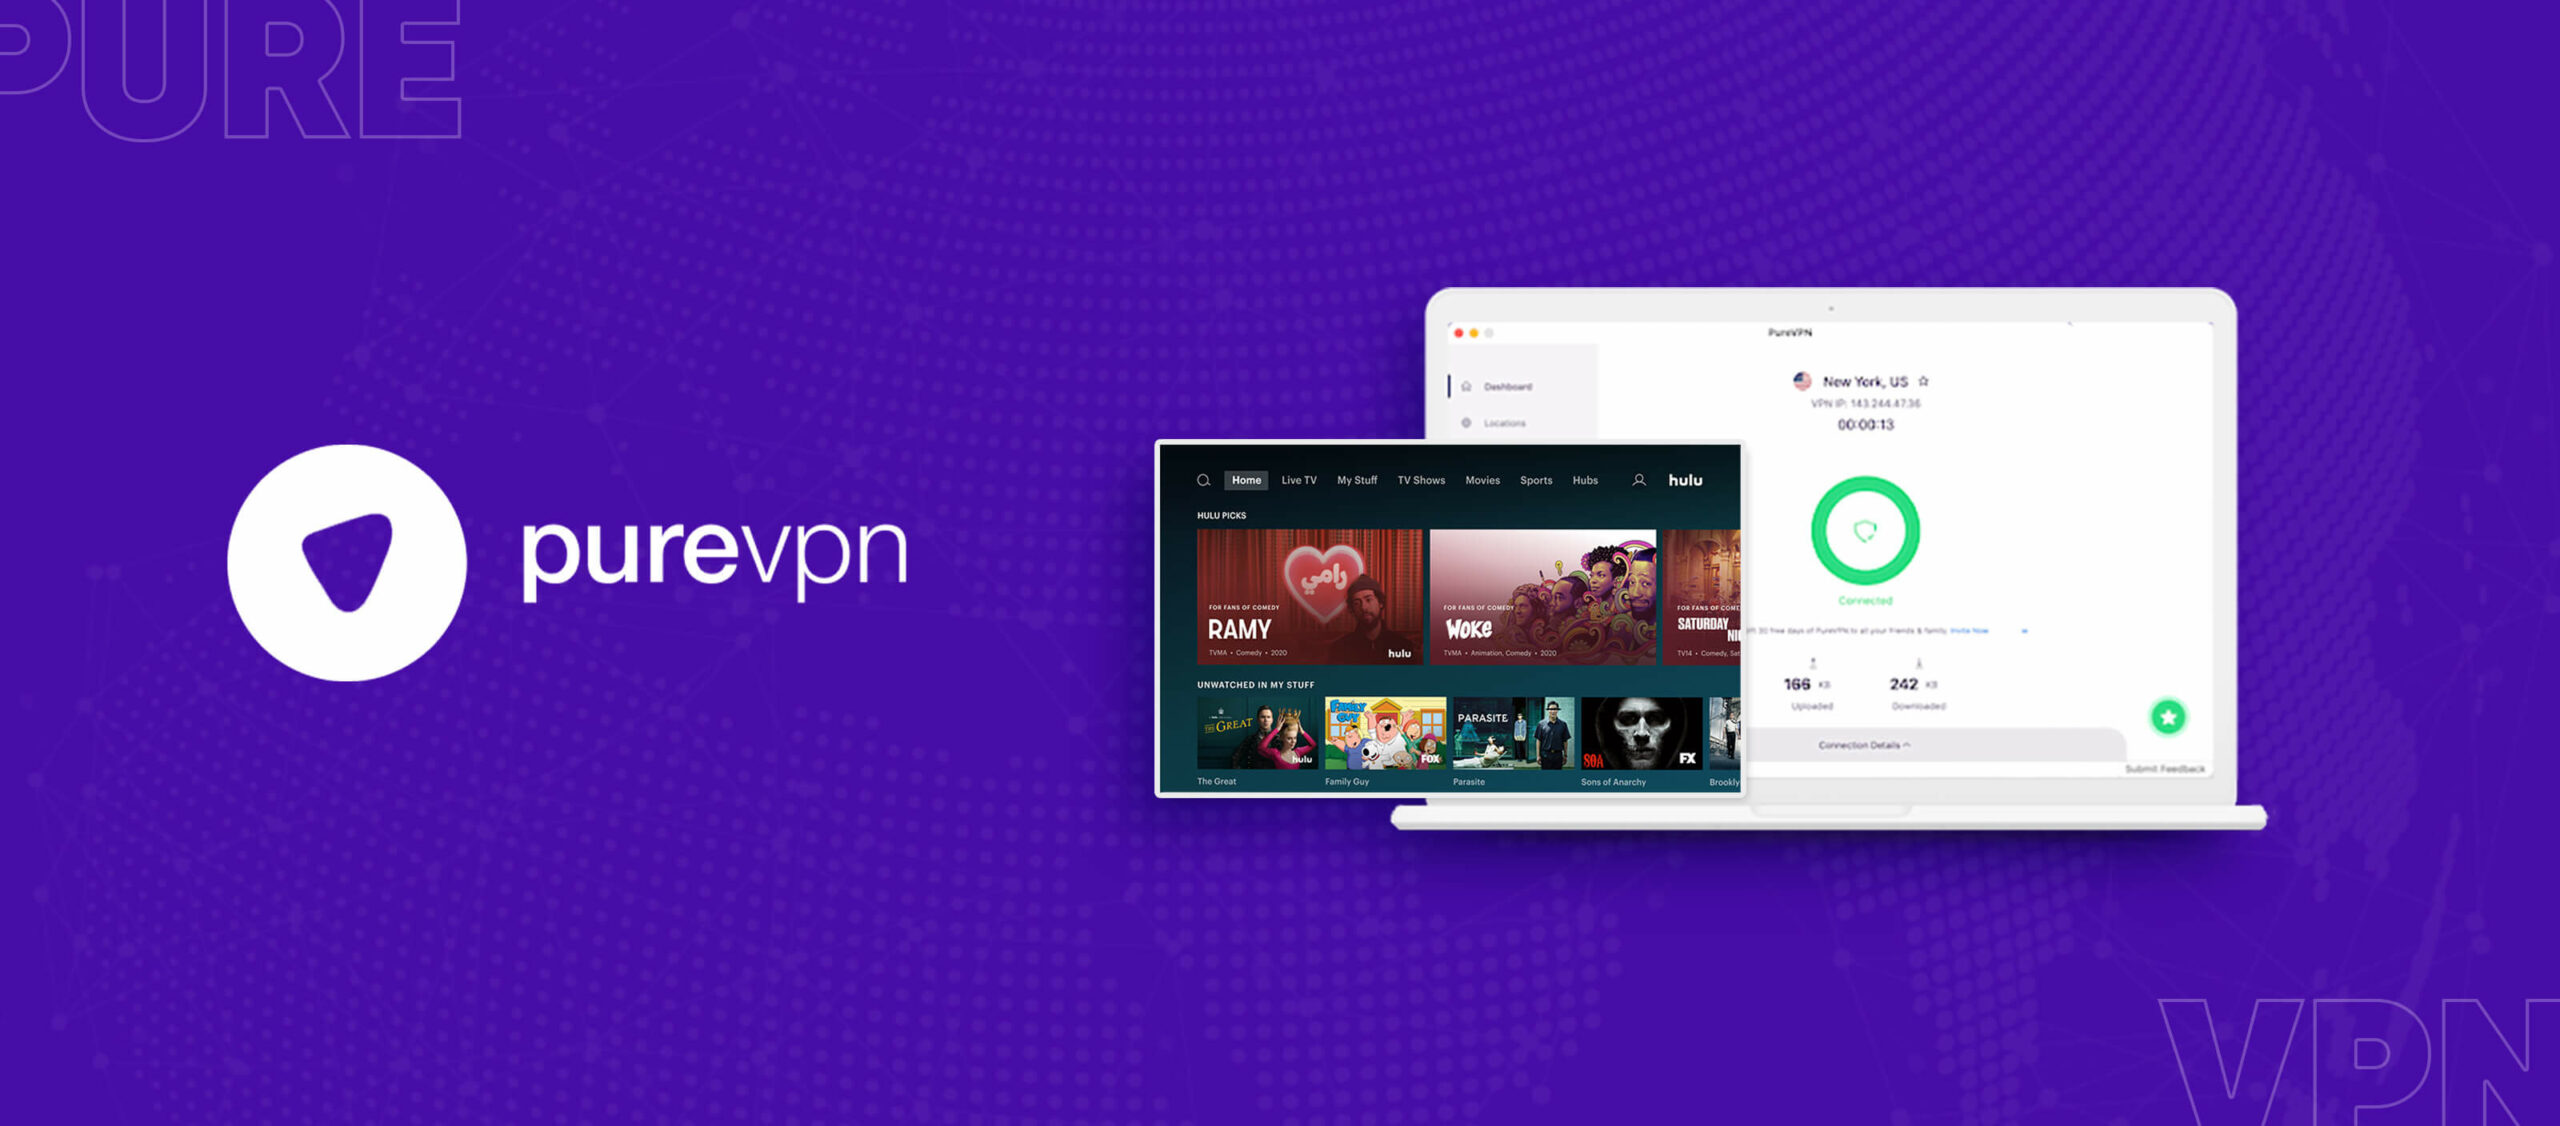 PureVPN-Hulu è un servizio di rete privata virtuale (VPN) che consente agli utenti di accedere al sito di streaming Hulu da qualsiasi parte del mondo. Con PureVPN-Hulu, gli utenti possono bypassare le restrizioni geografiche e accedere a contenuti esclusivi di Hulu, come film, serie TV e programmi originali. Inoltre, PureVPN offre una connessione sicura e crittografata per 